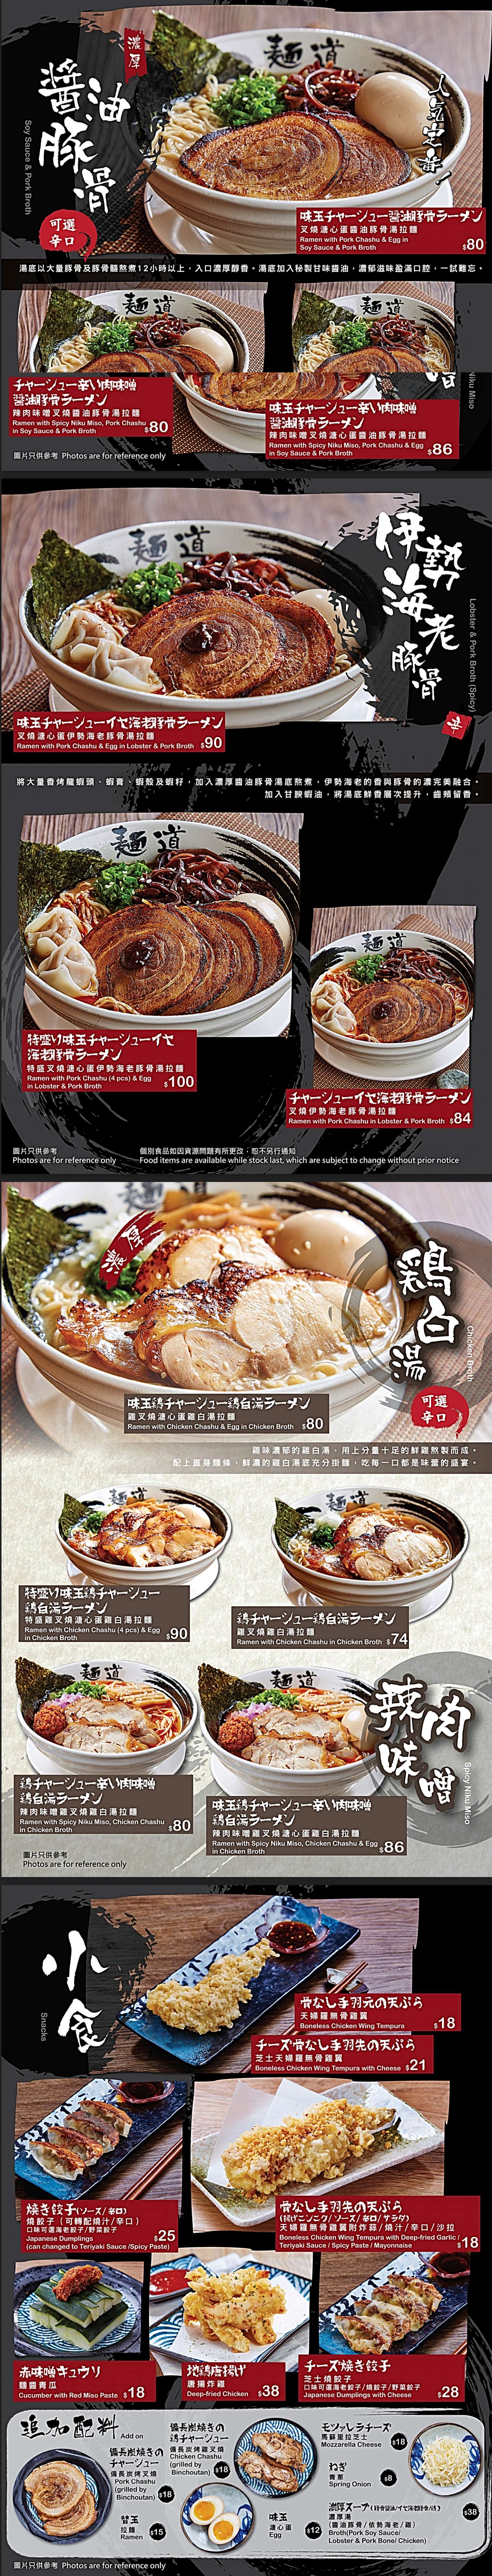 麺道晚上6點後外賣自取主餐牌6折優惠(20年8月21日起)圖片2